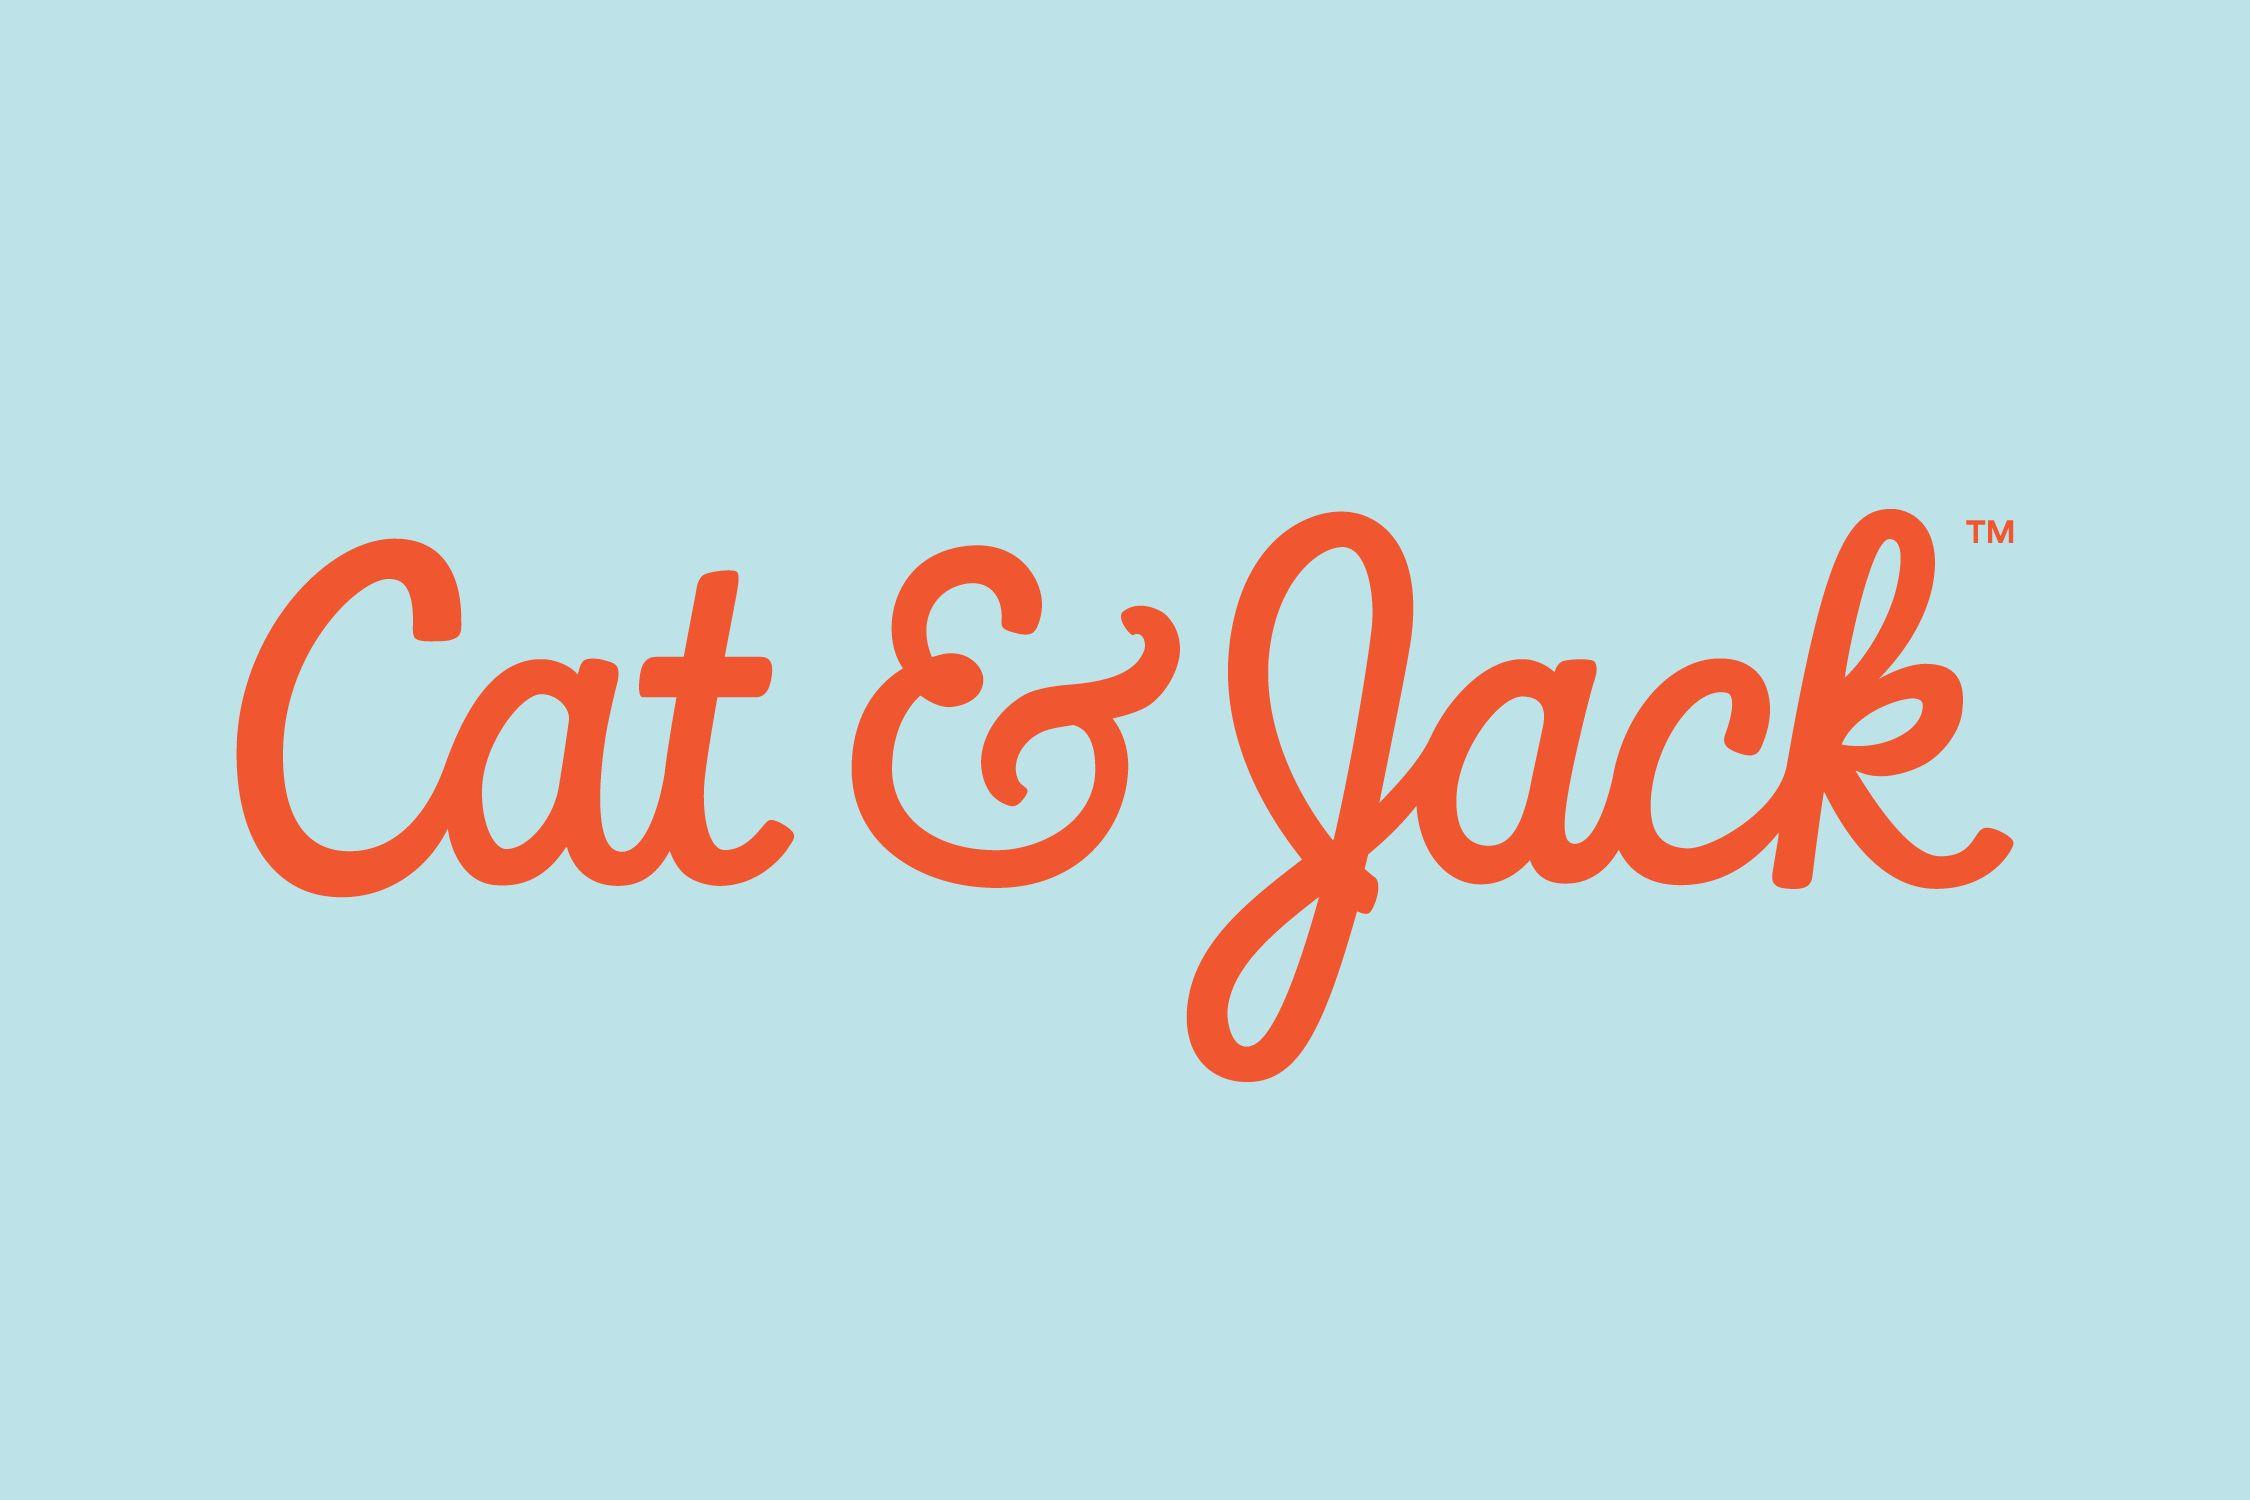 Orange Jack Logo - Cat & Jack